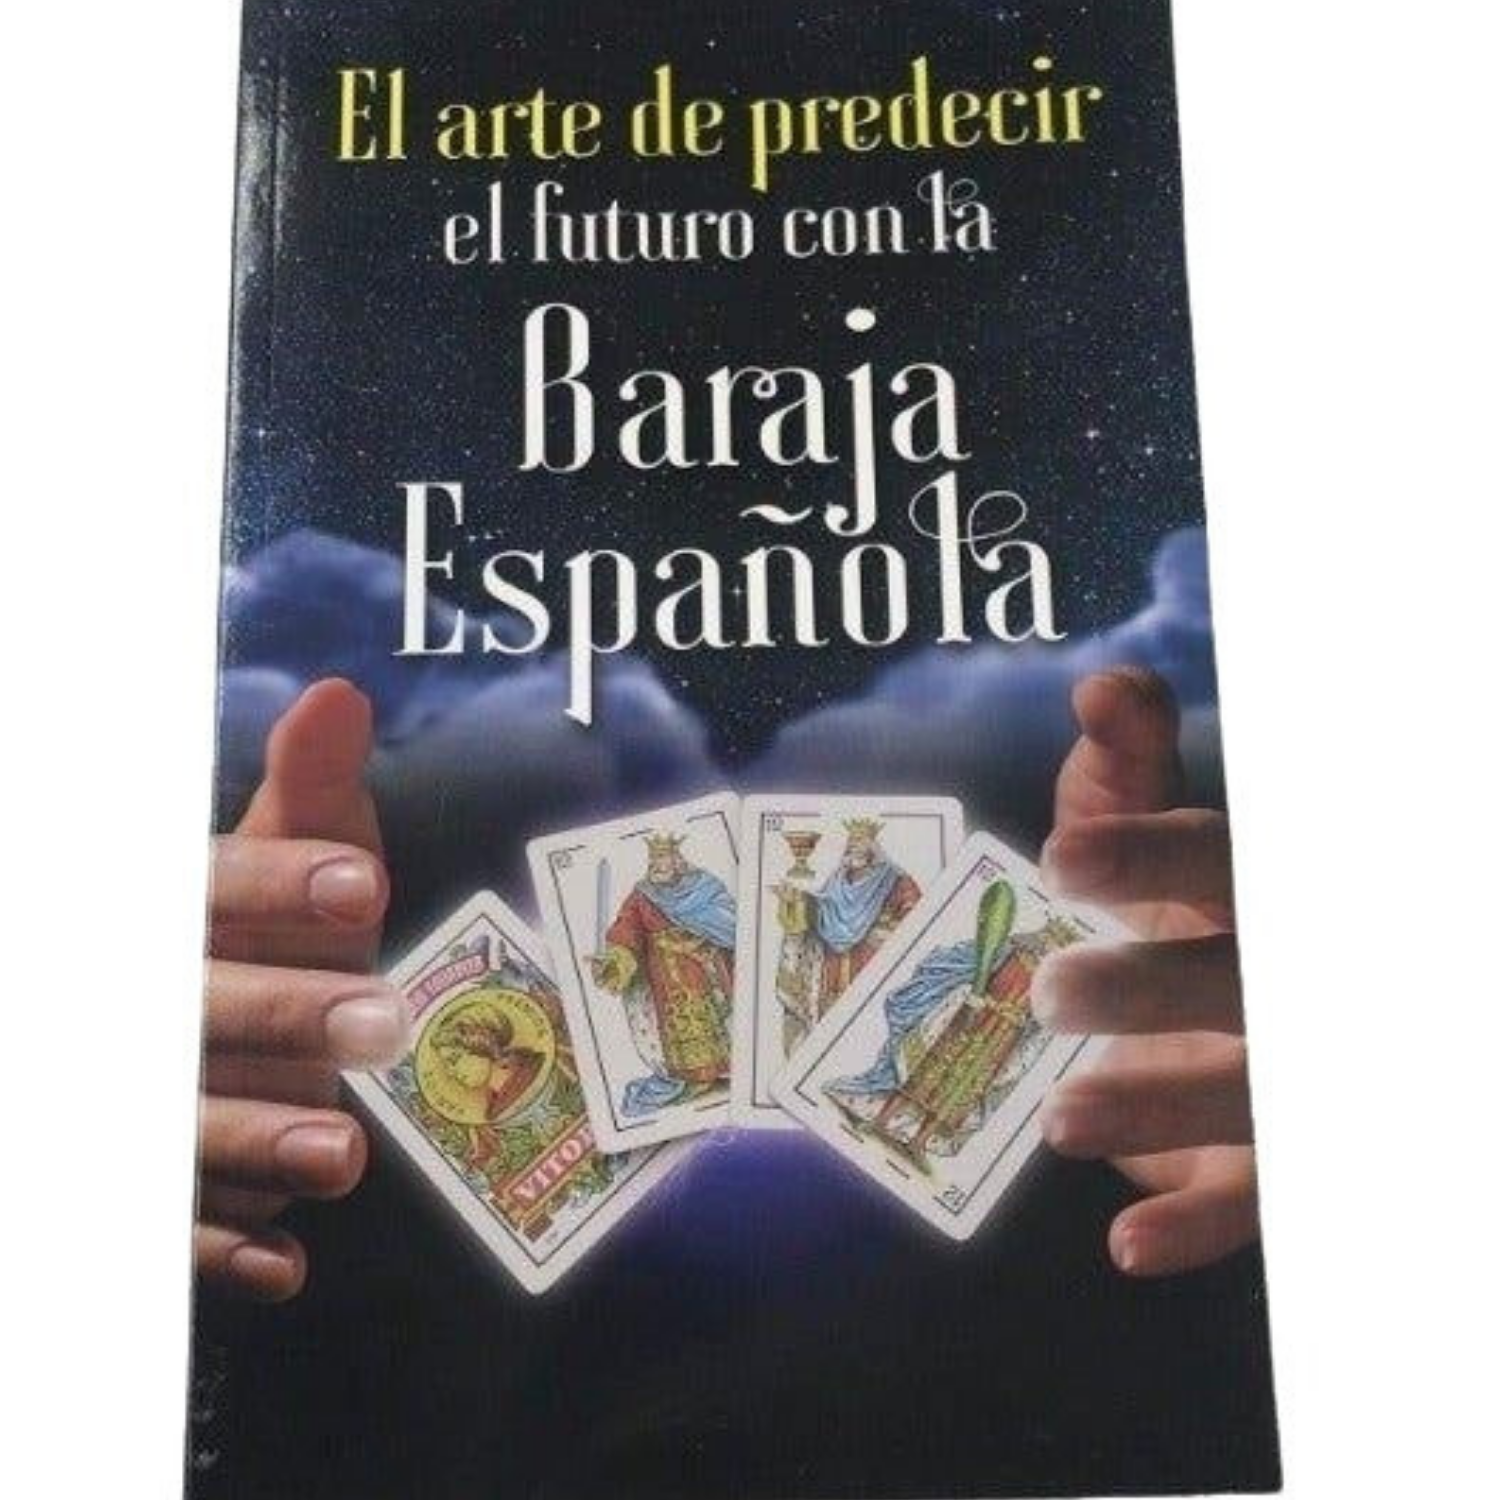 Spanish Cards Tarot Deck Plus Book - El Arte de Predecir el Futuro Baraja Espanola